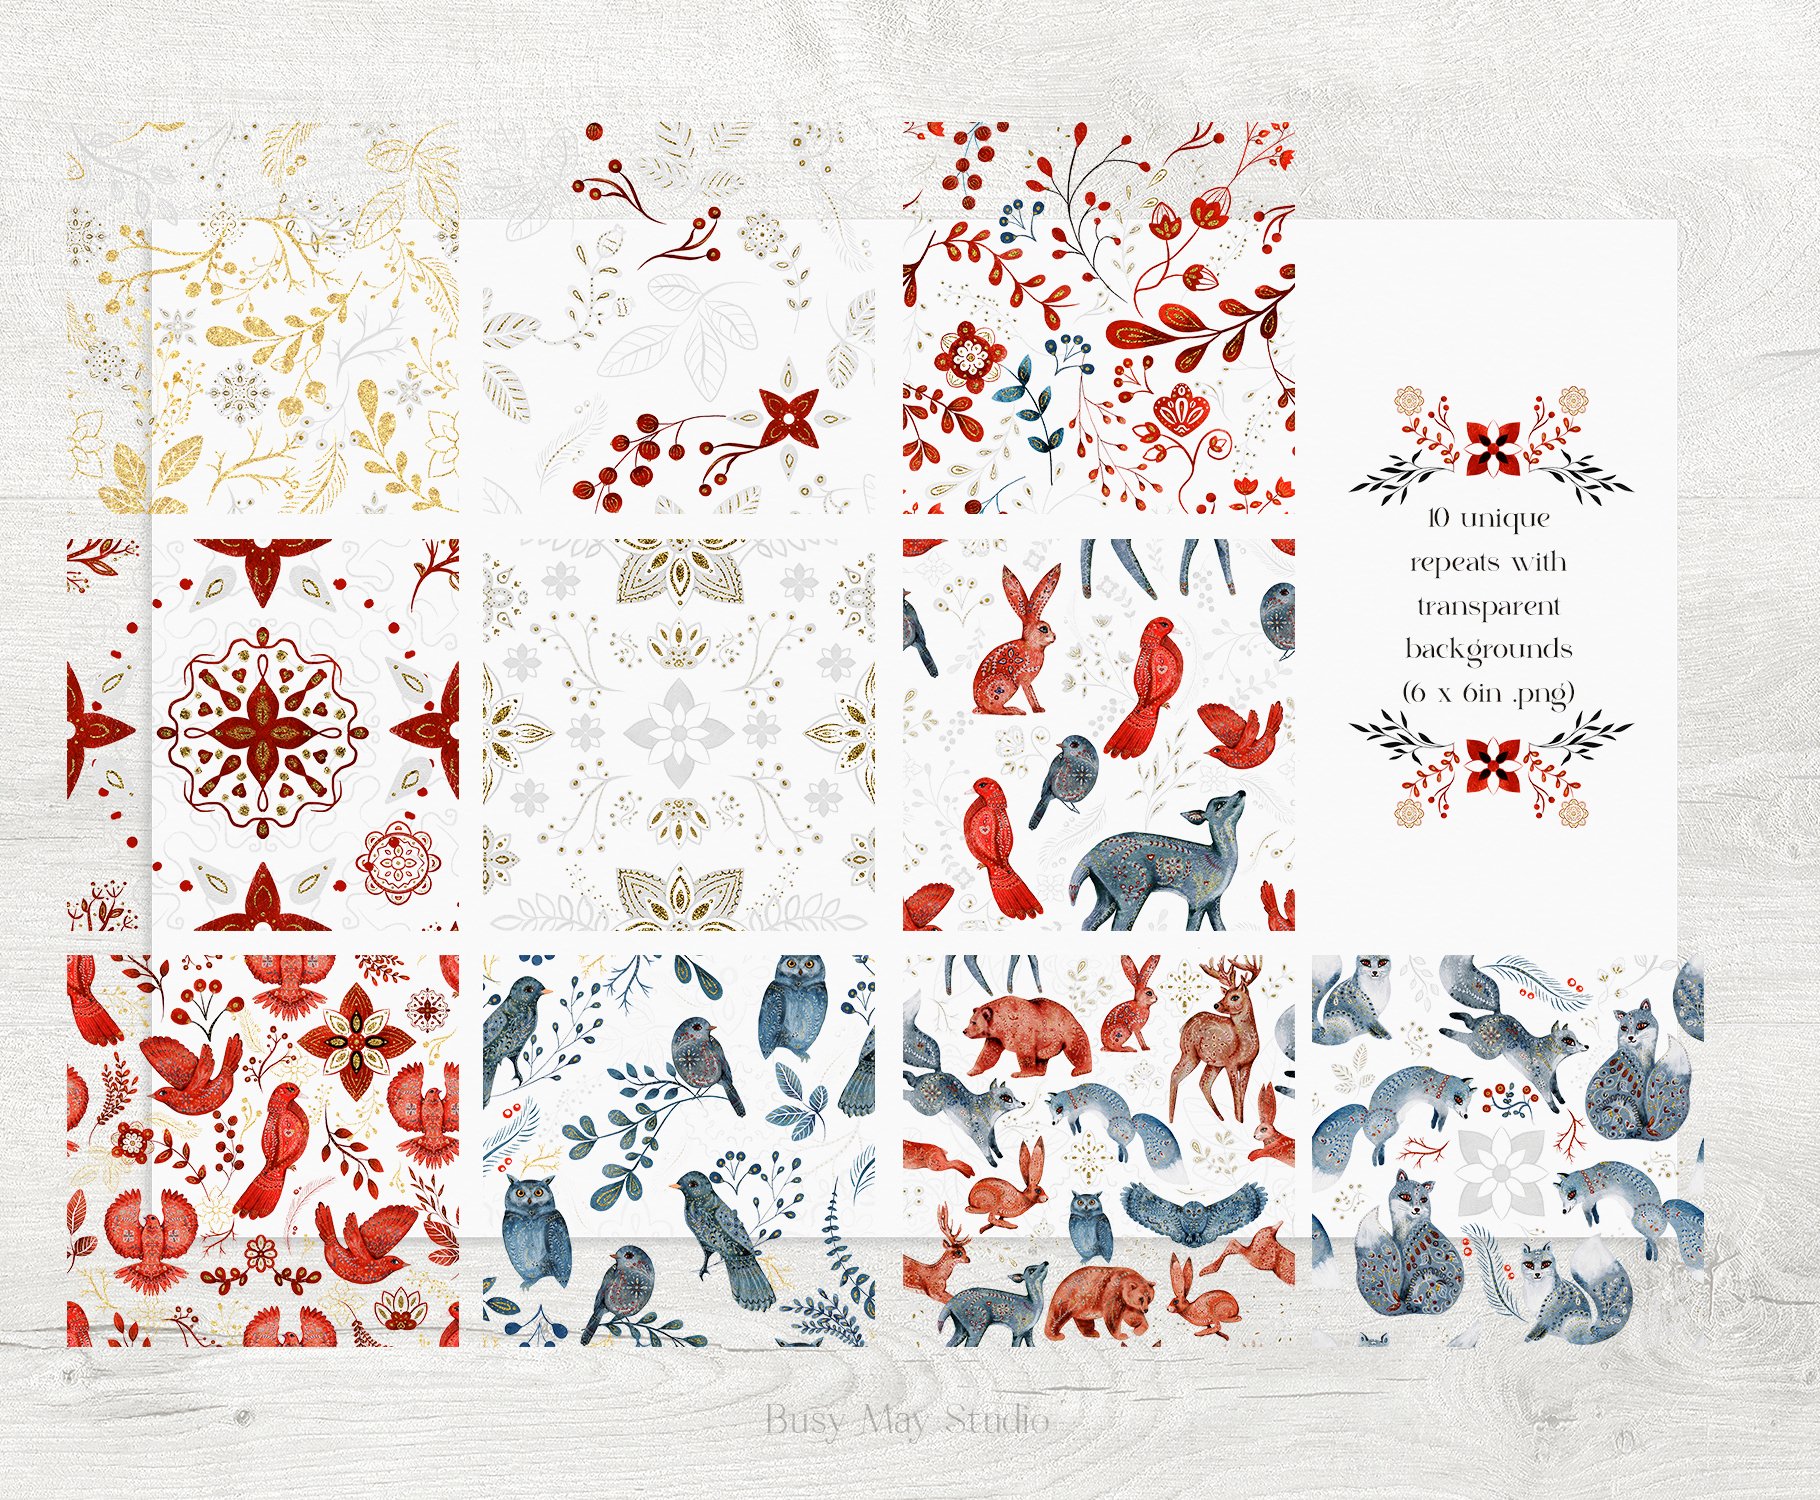 977 动物炫彩无缝图案背景素材Taika- Folk Seamless Patterns